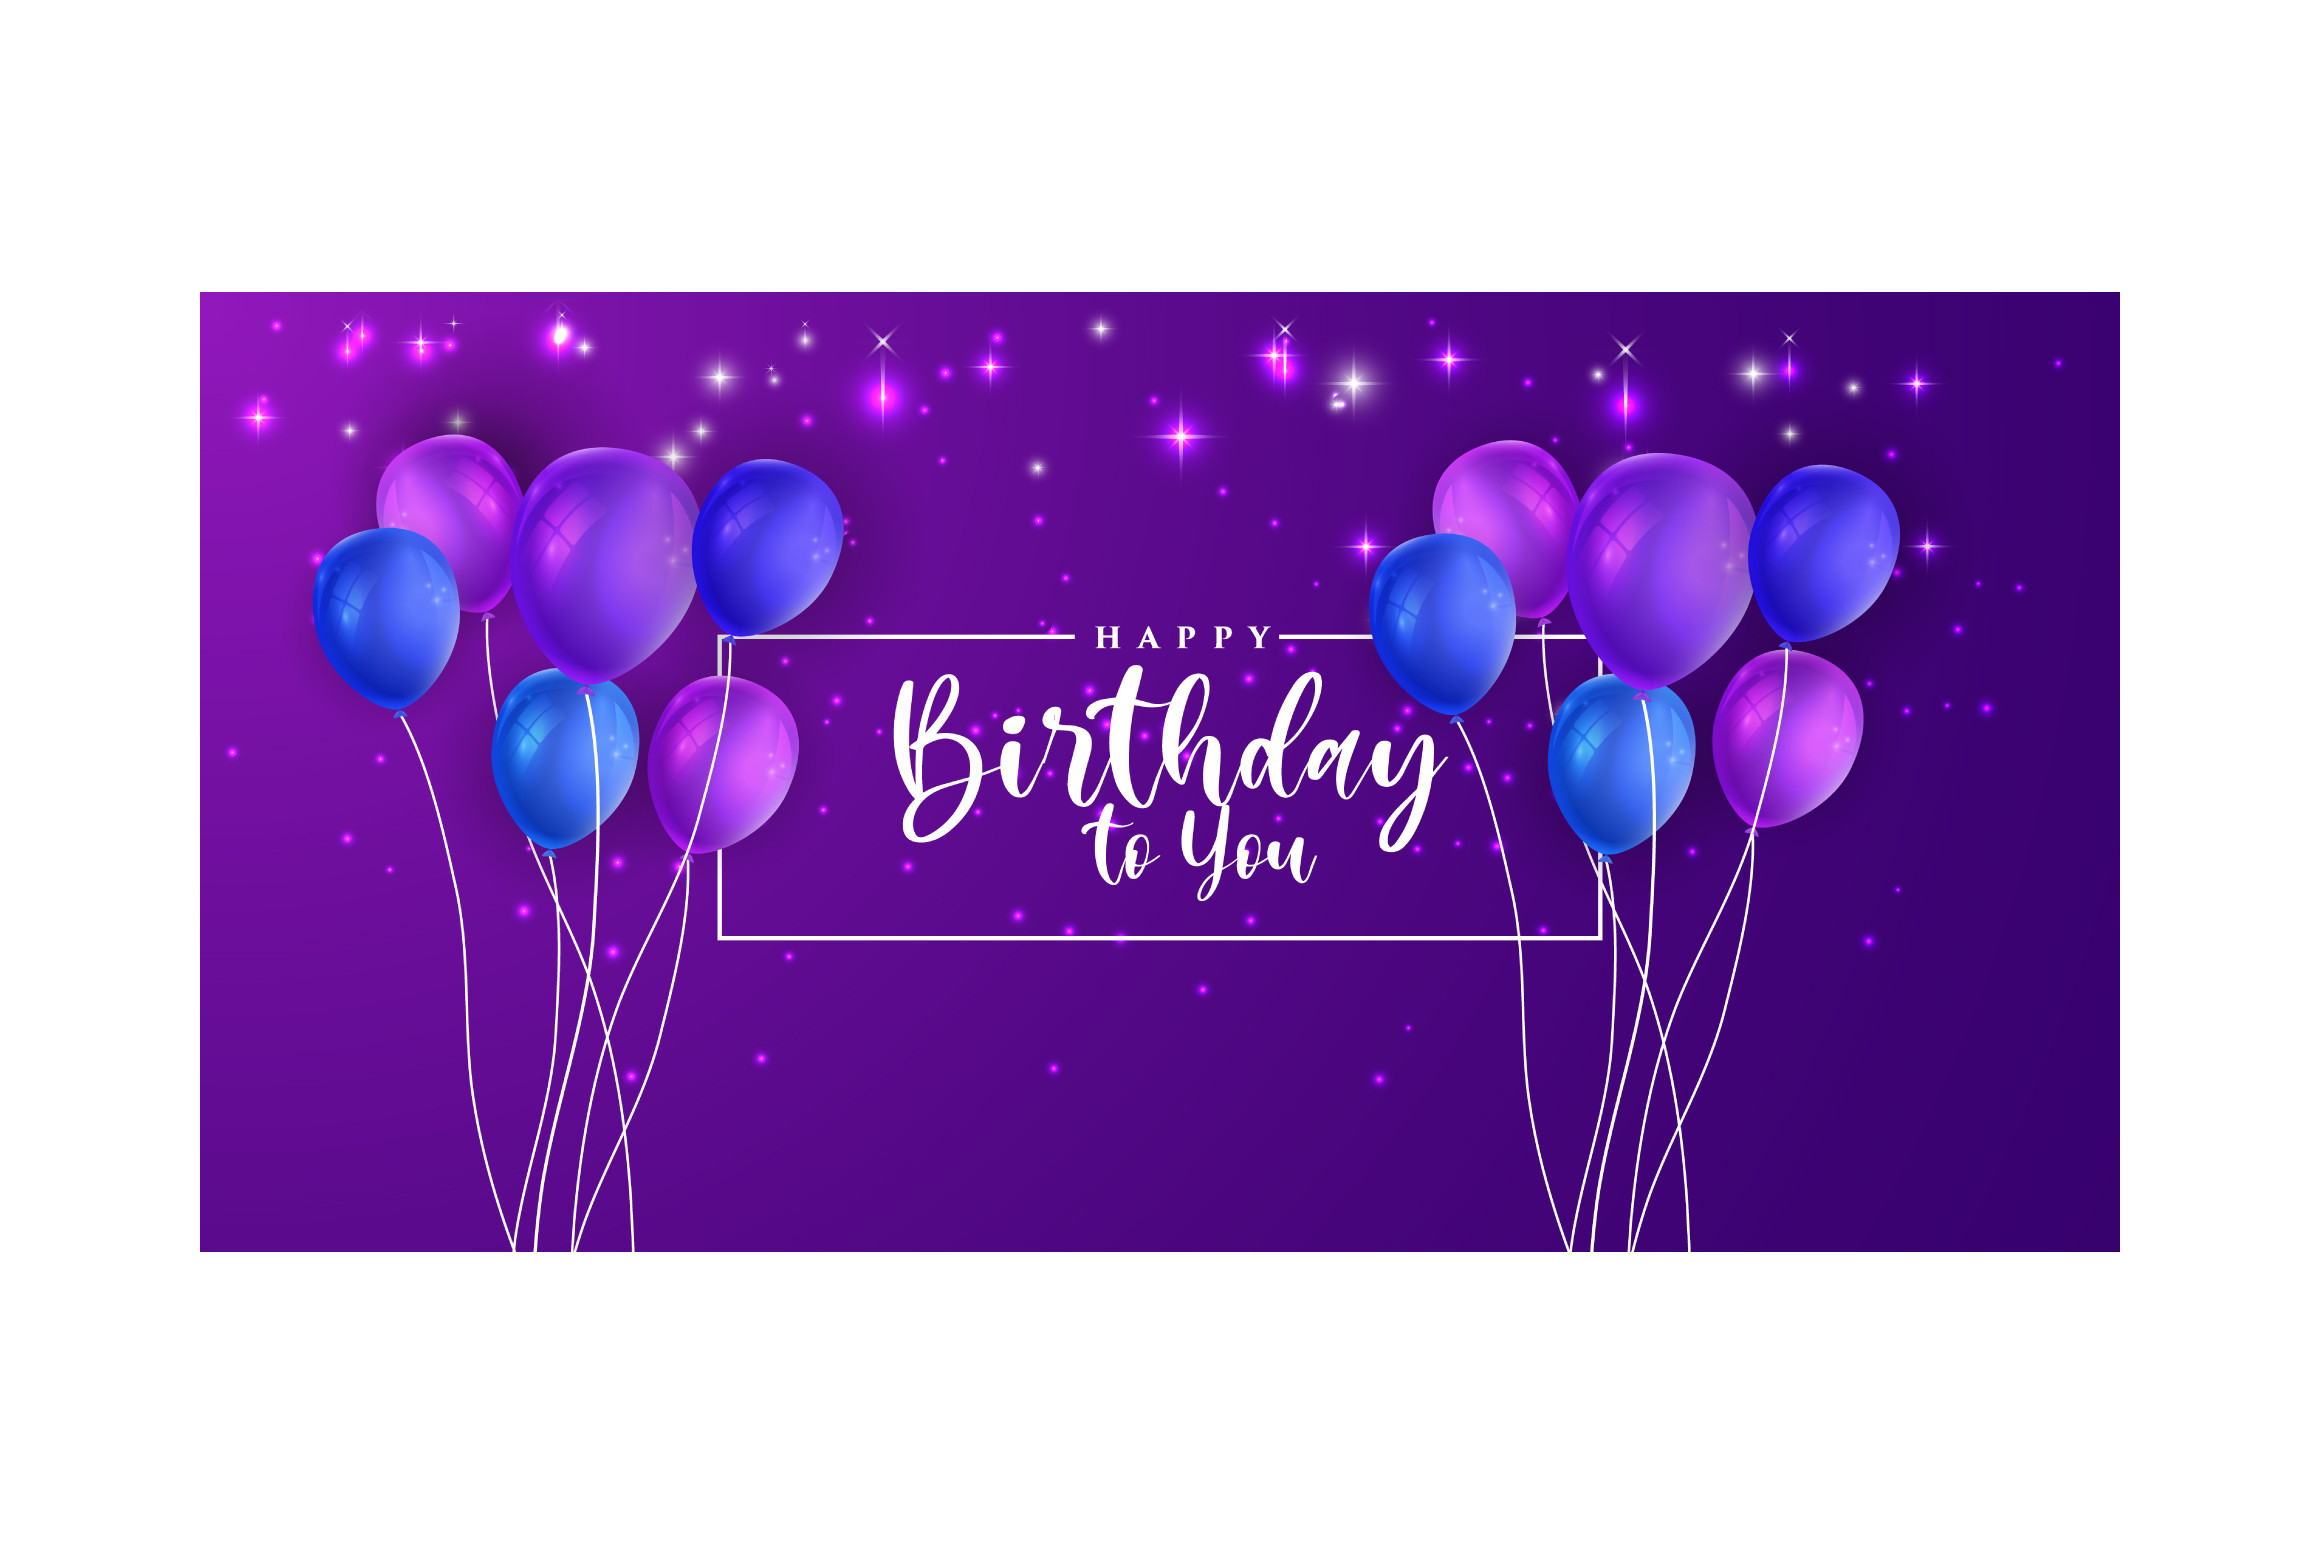 purple happy birthday images